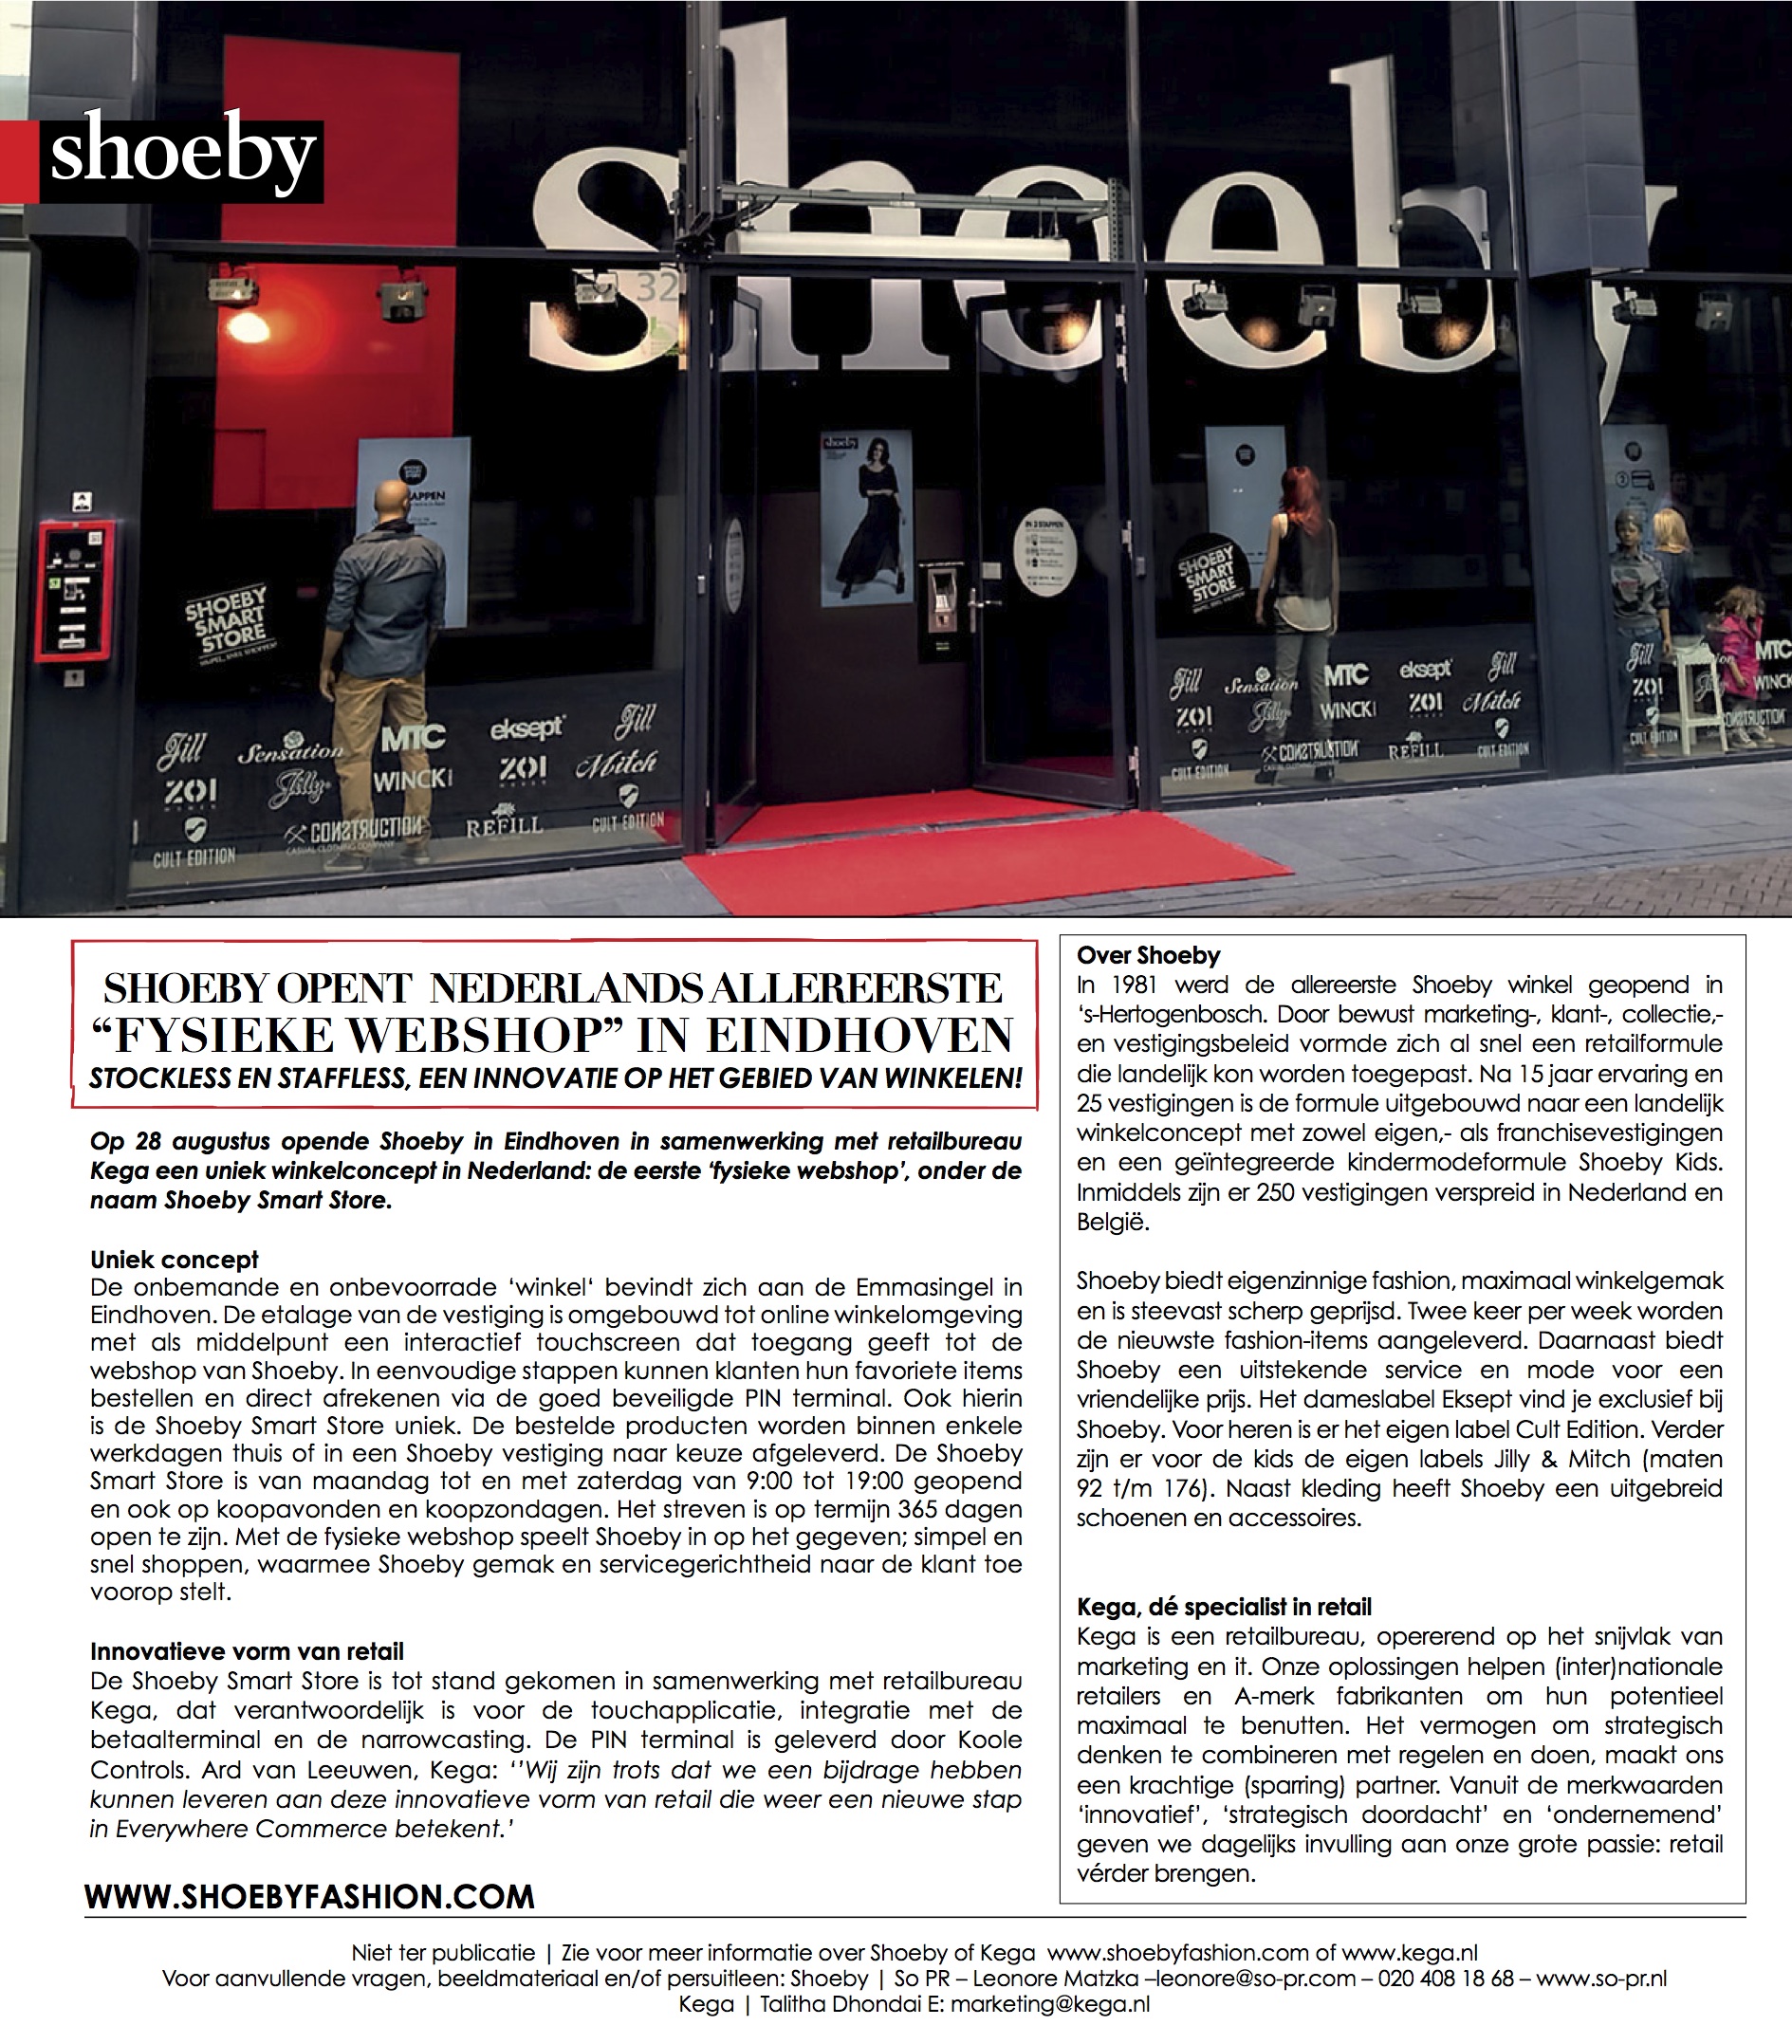 Shoeby opent Nederlands allereerste ''fysieke webshop''